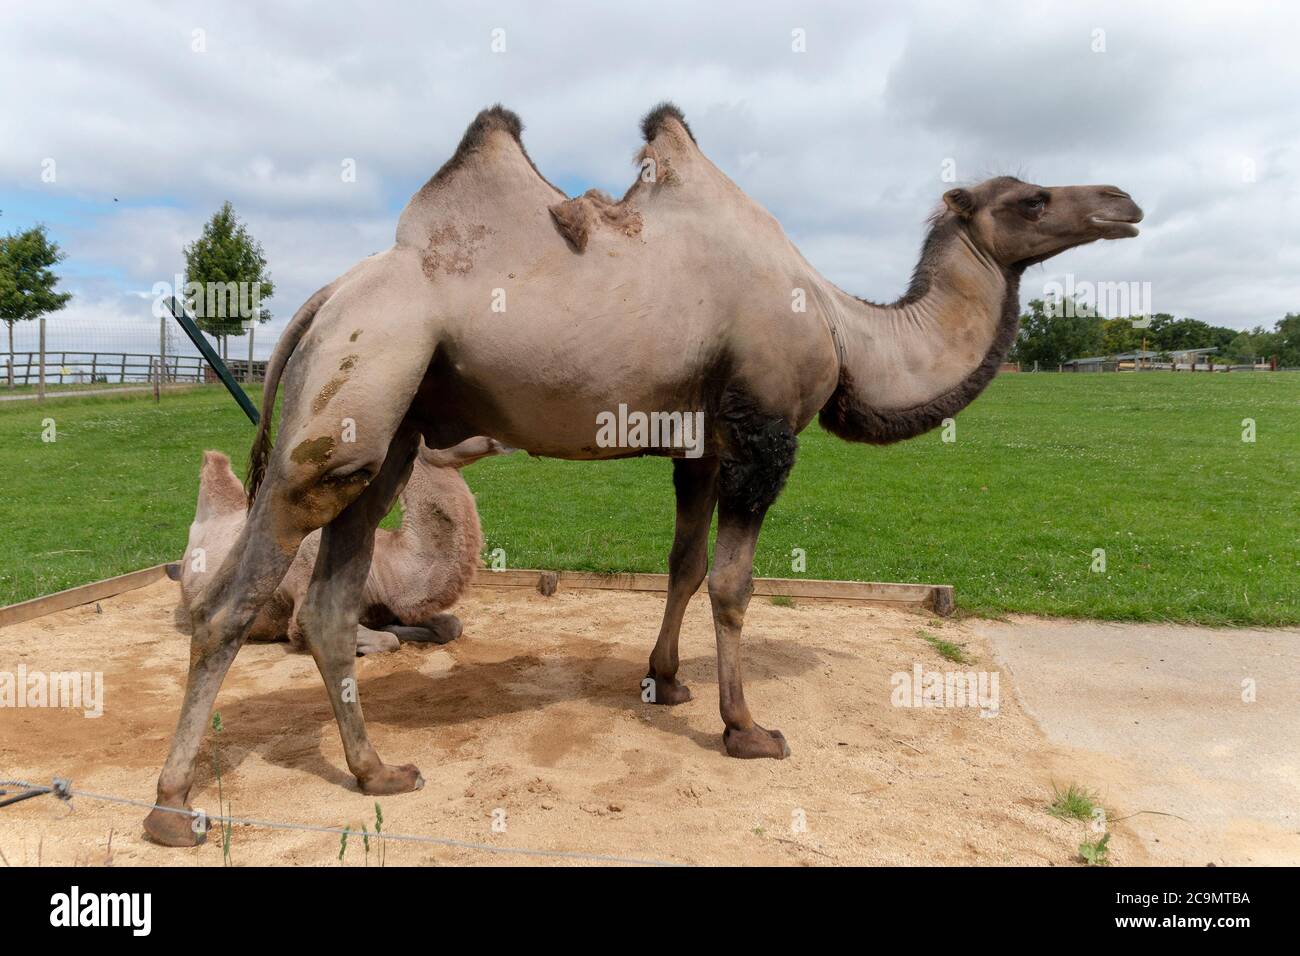 vue rapprochée de deux chameaux dans un enclos ouvert baignant le soleil Banque D'Images